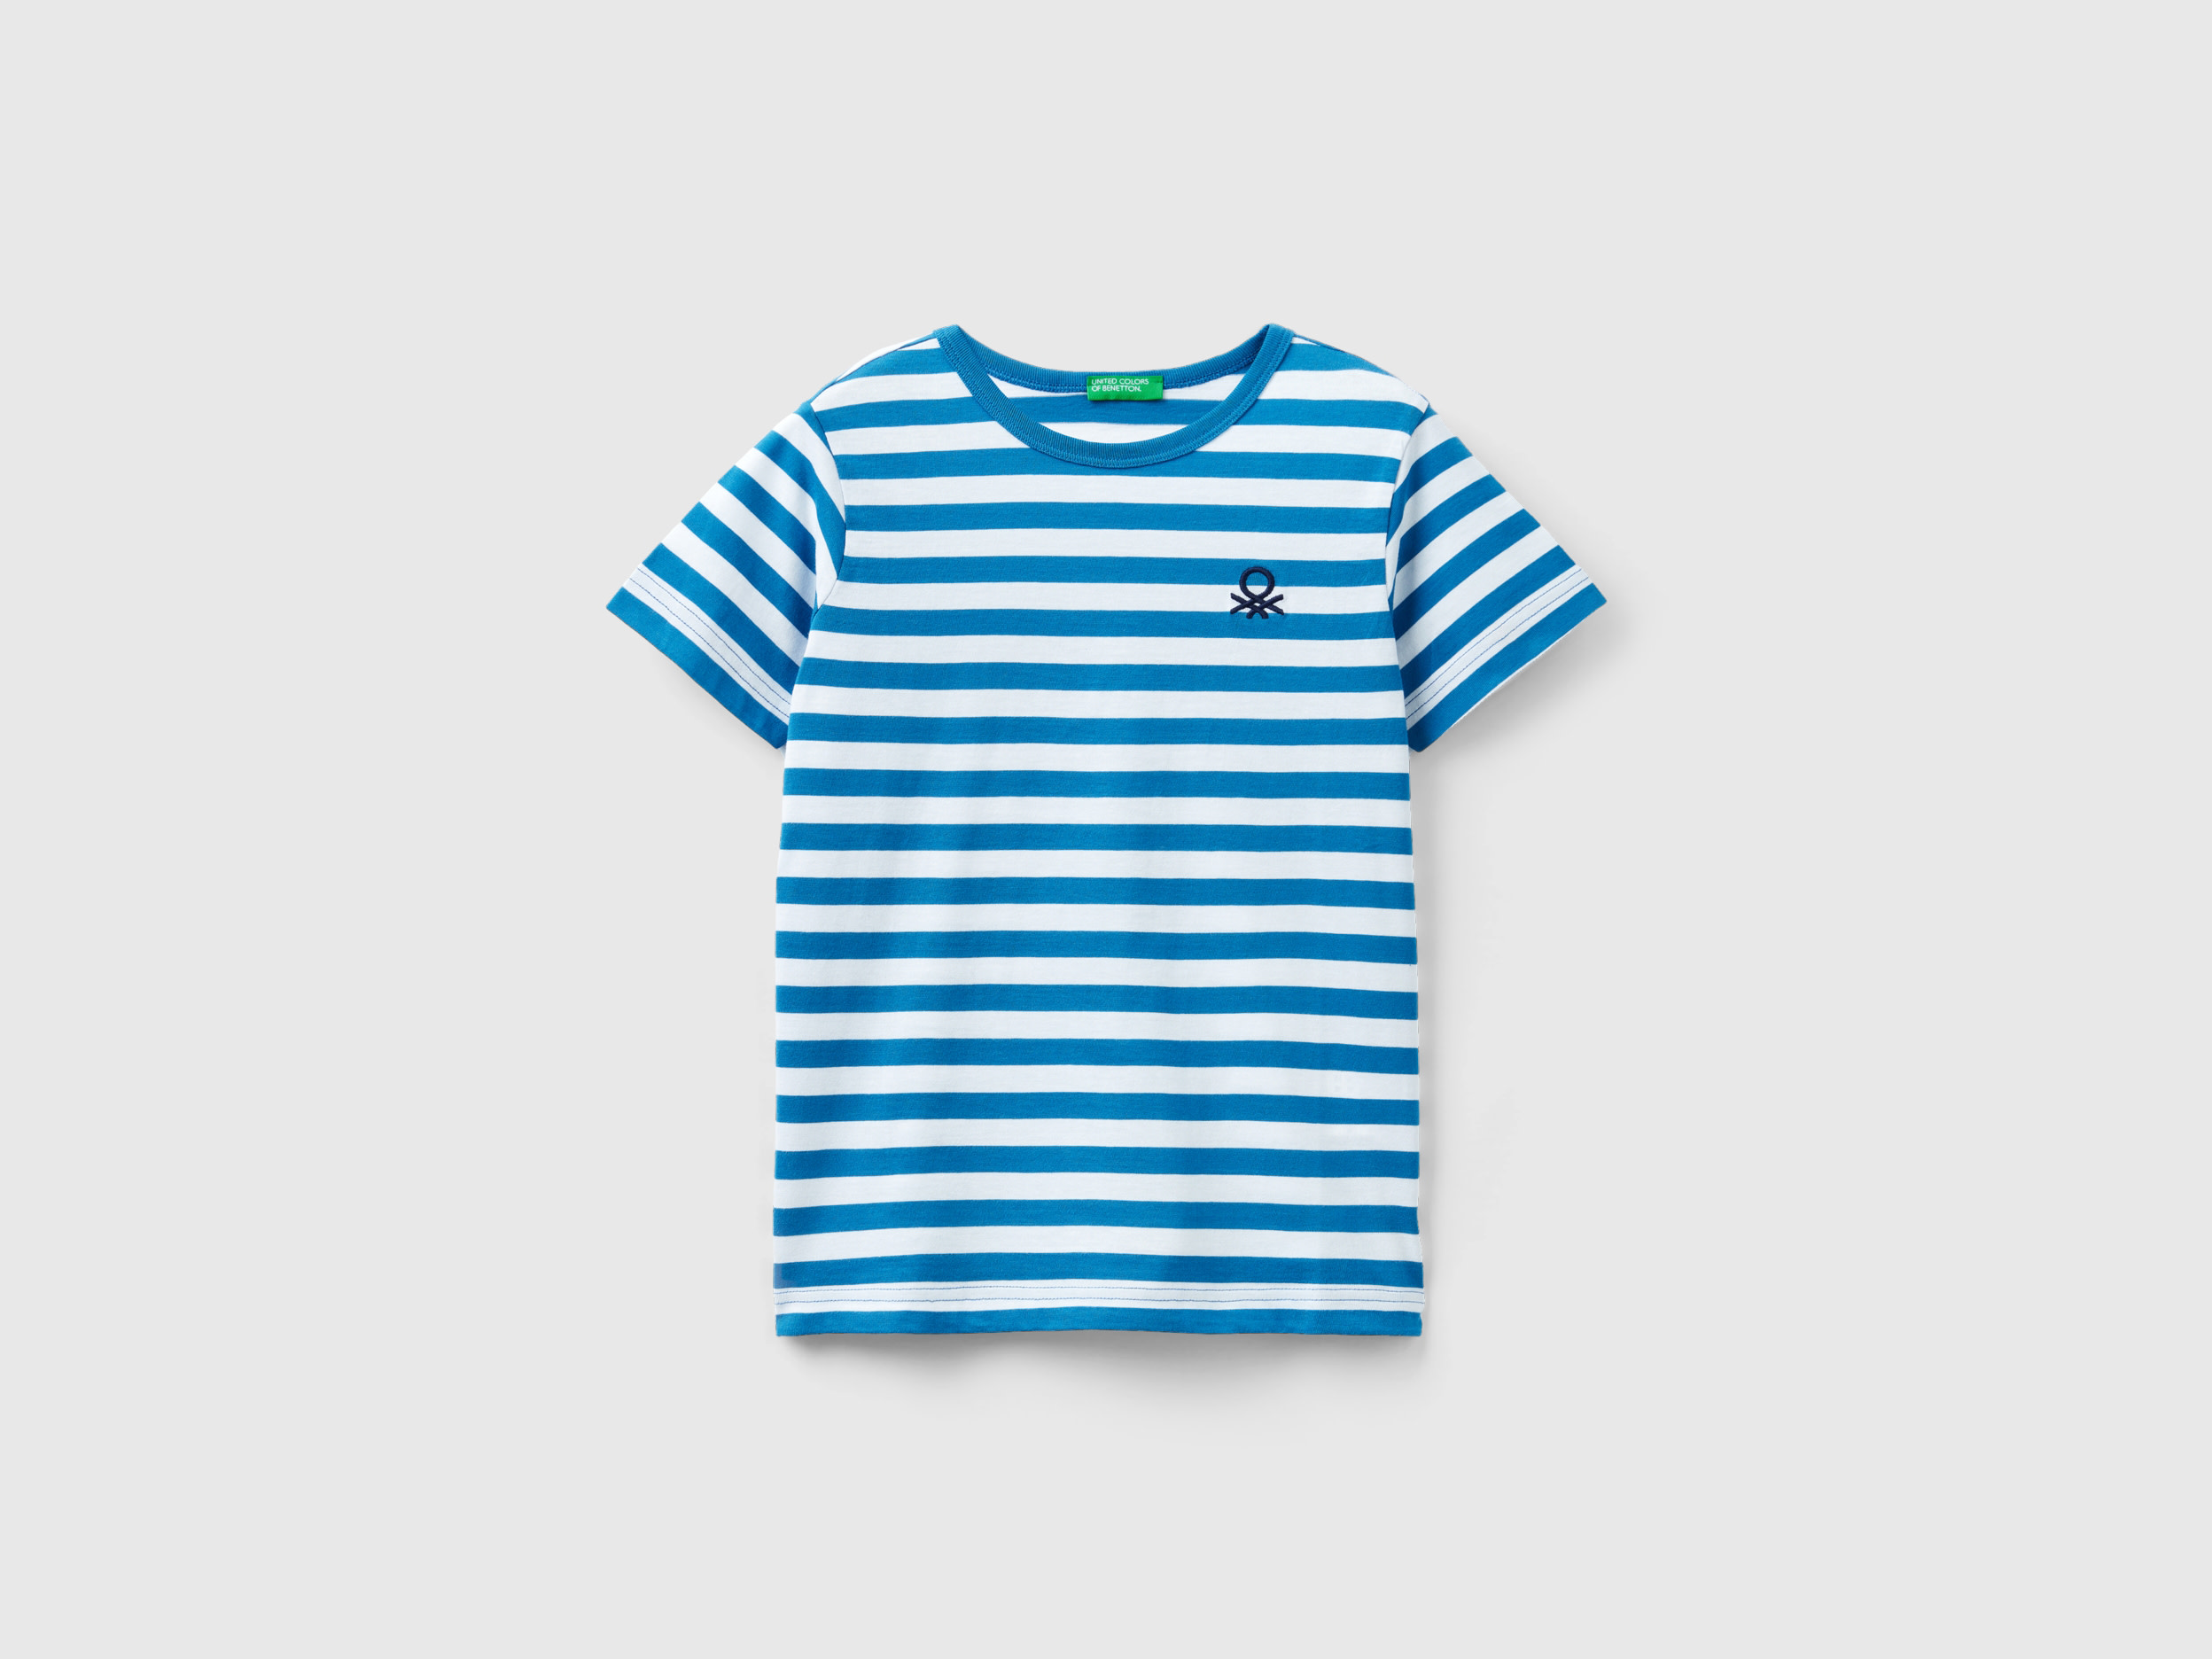 Benetton, Striped 100% Cotton T-shirt, size XL, Light Blue, Kids